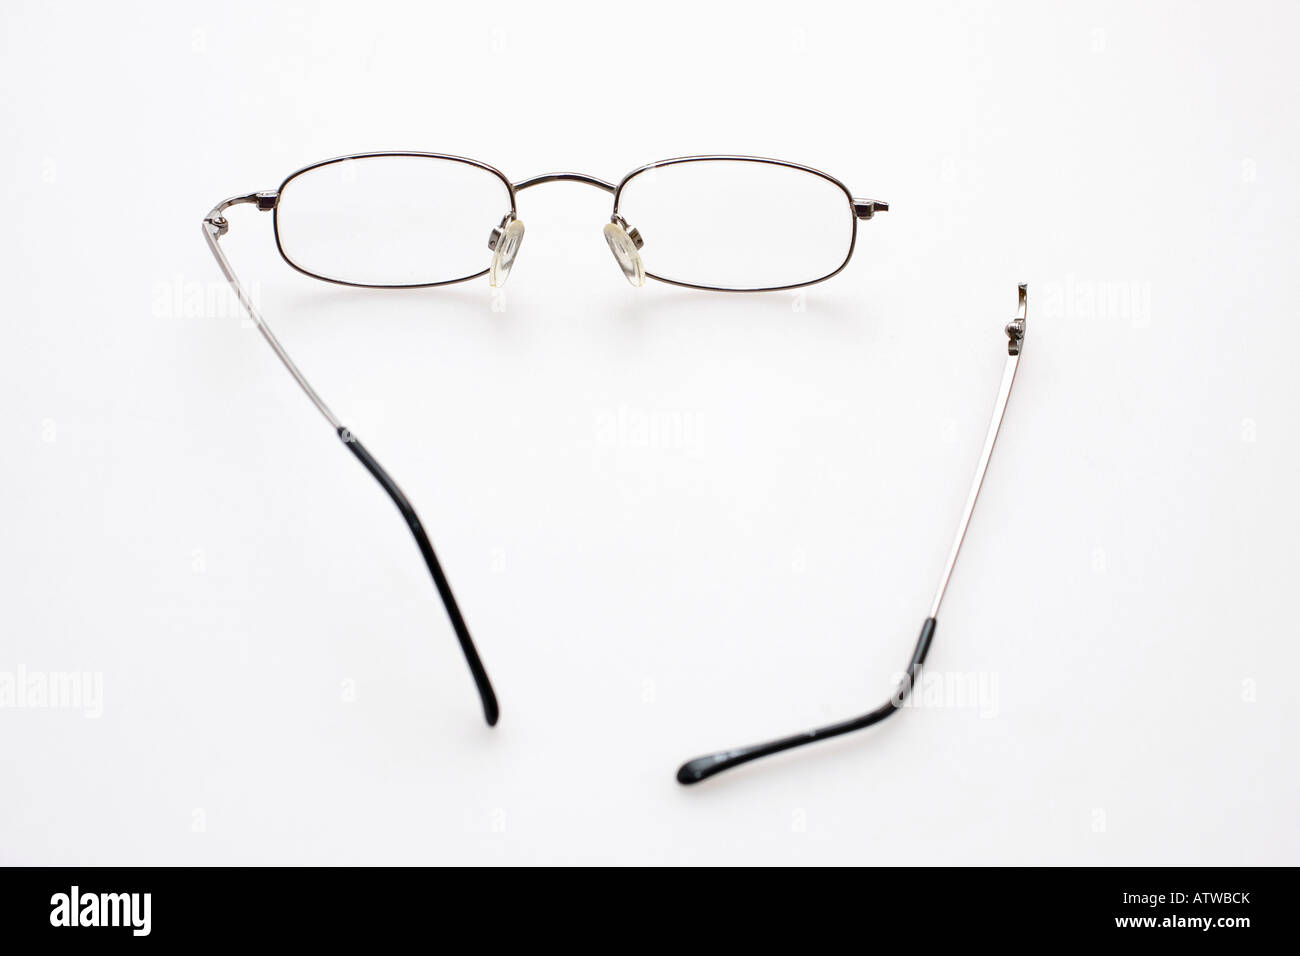 Paire de lunettes avec un bras cassé contre un fond blanc Photo Stock -  Alamy